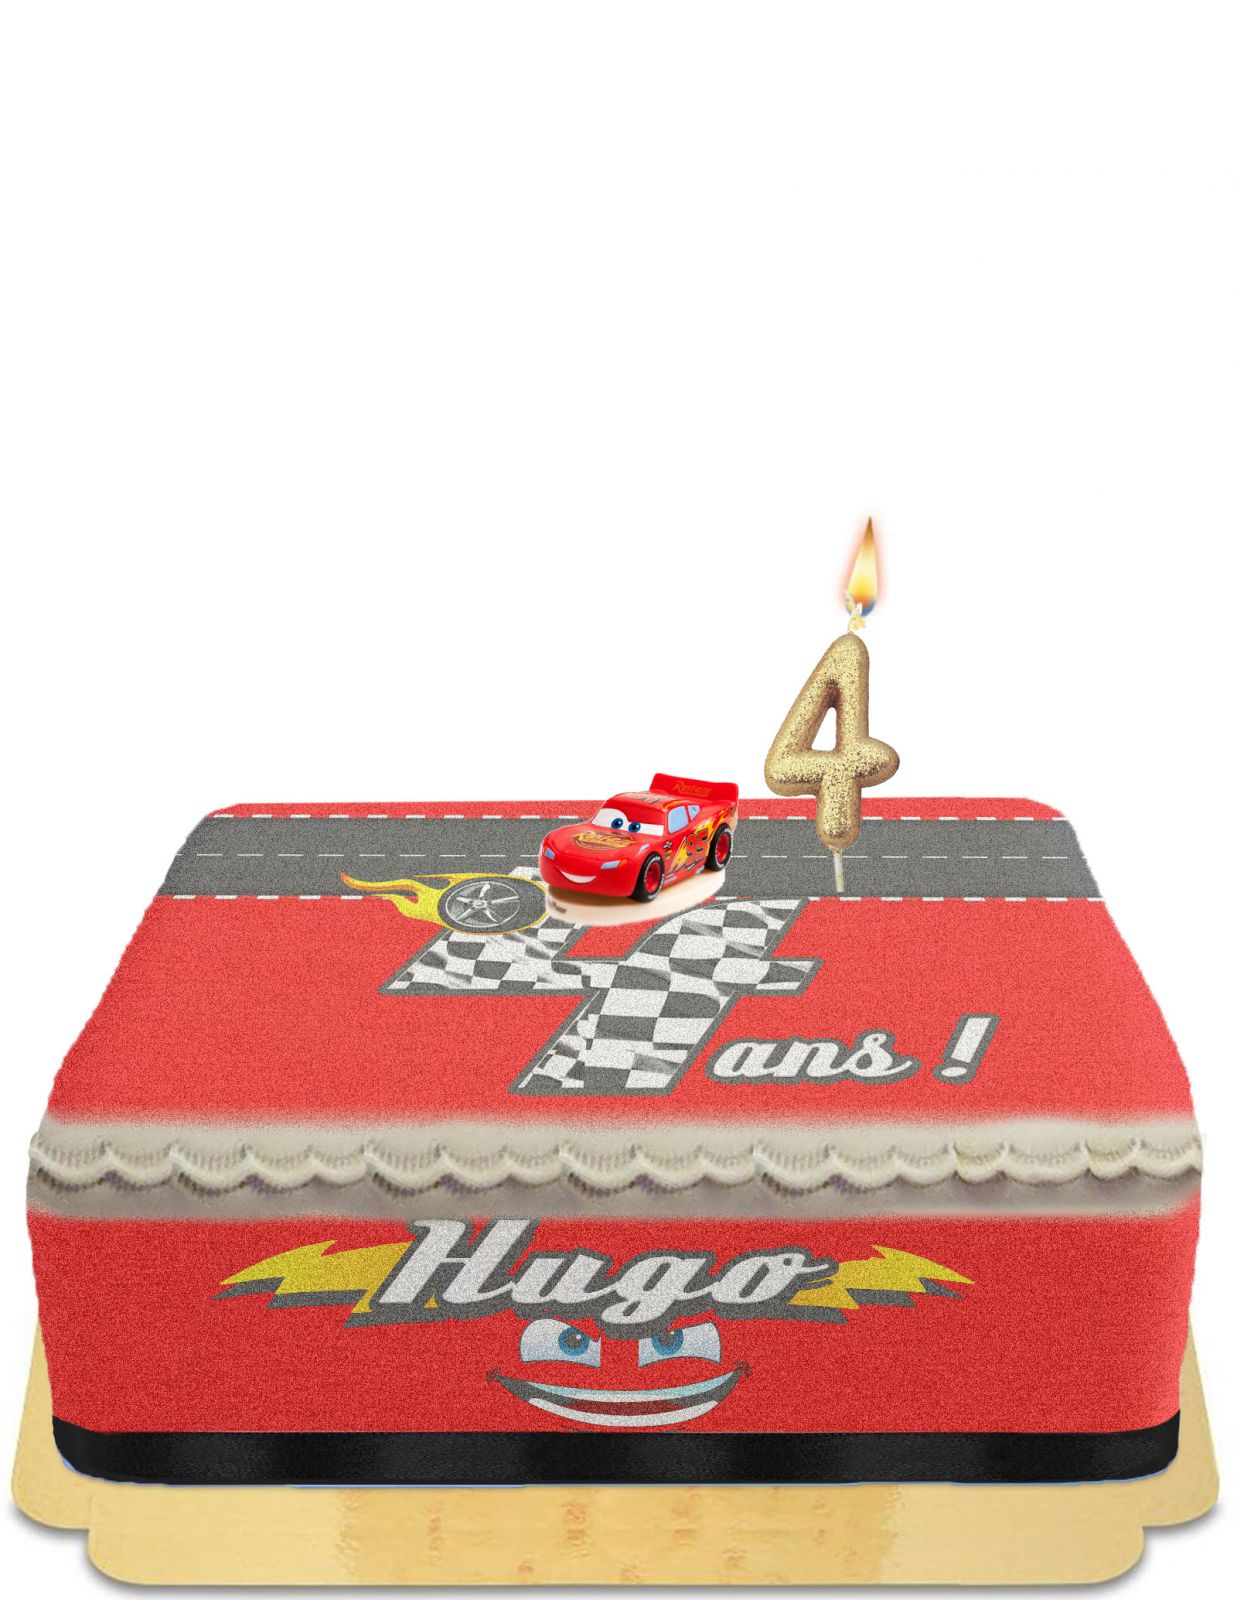 Joyeux anniversaire 6 ans, gâteau petites voitures.